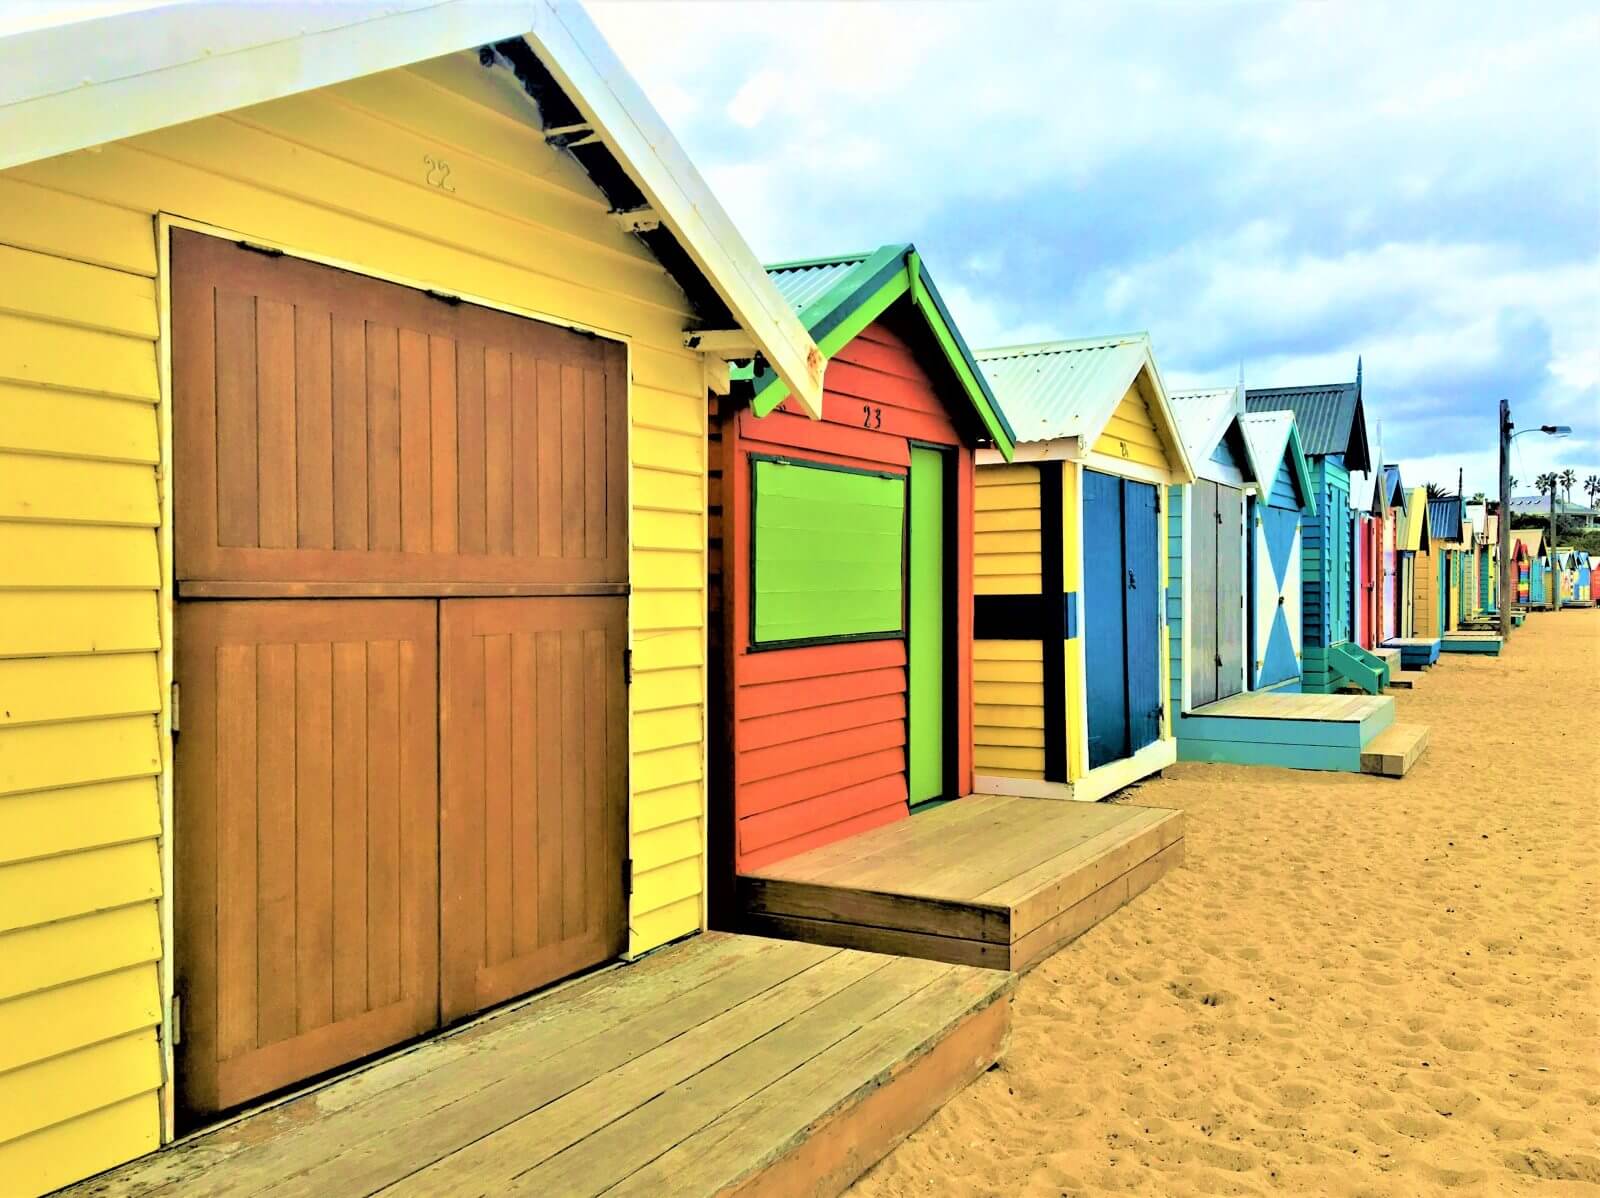 Melbourne Sehenswürdigkeiten - Brighton Strandhäuser